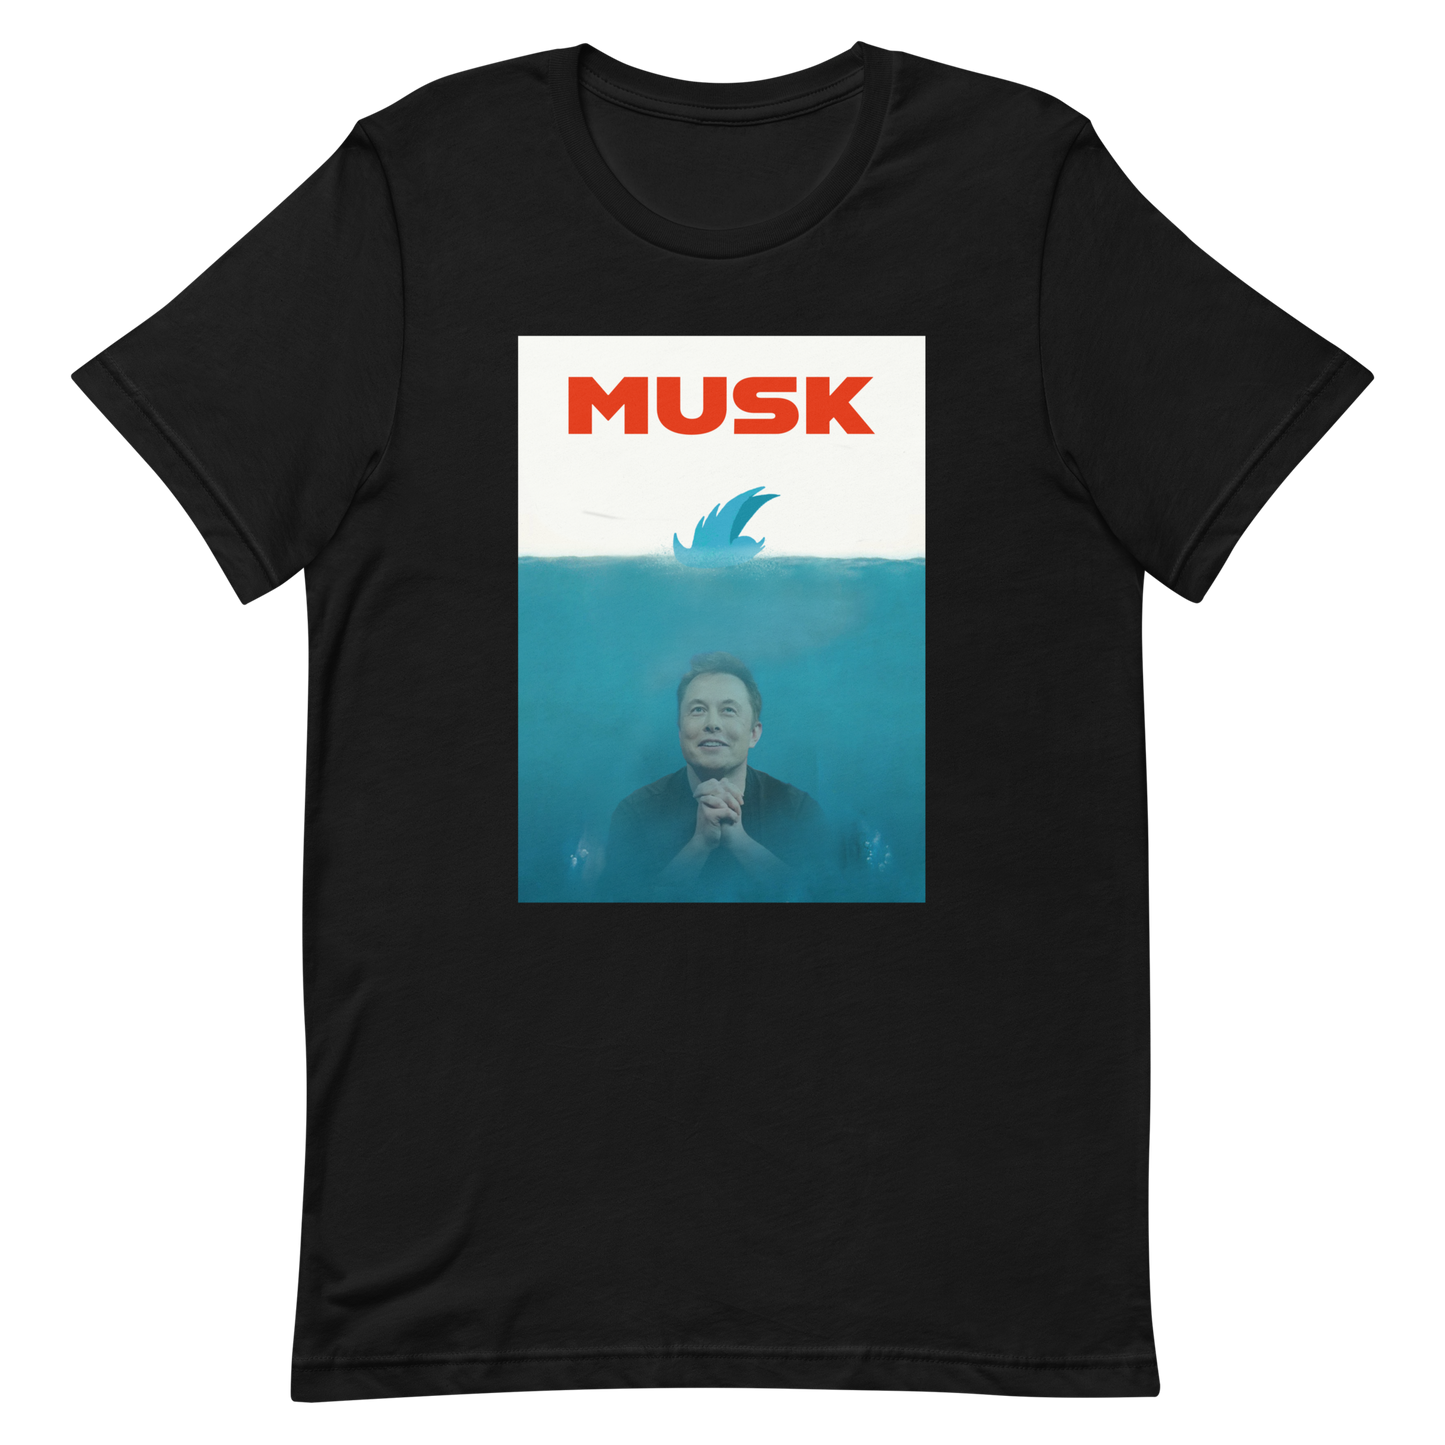 Musk T-shirt